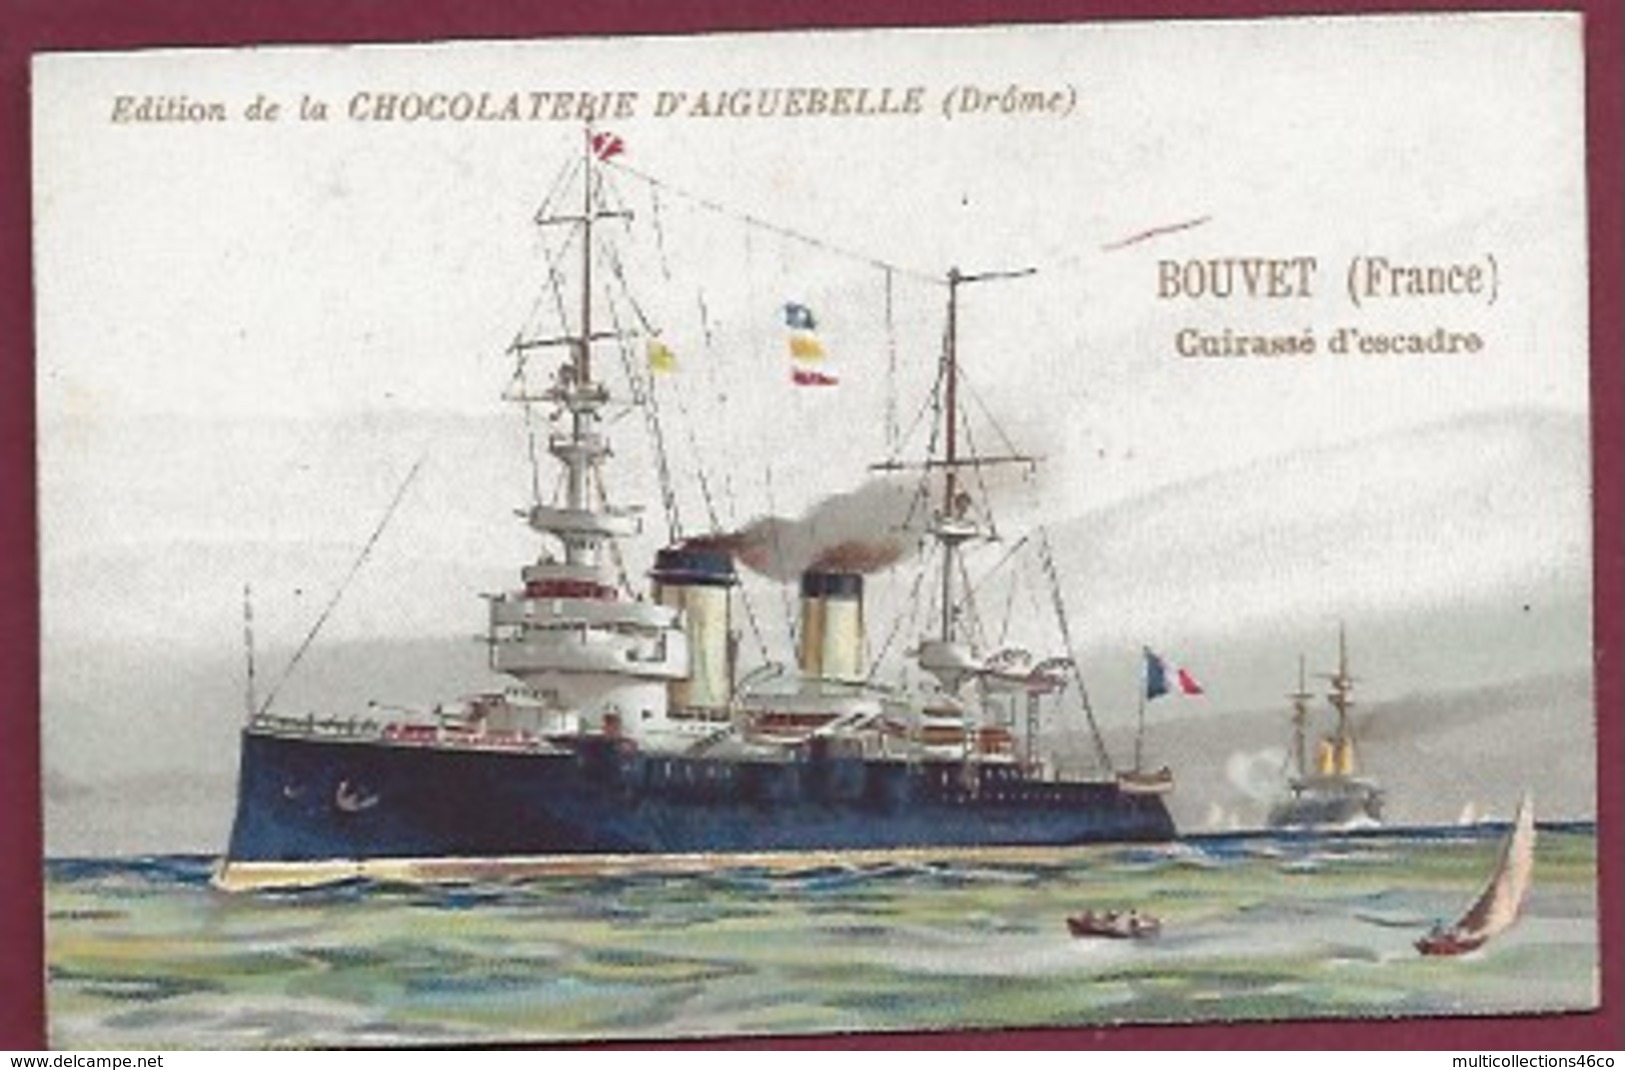 250619A - CHROMO CHOCOLAT AIGUEBELLE - BOUVET France Cuirassé D'escadre Construit à Lorient En 1895 - Aiguebelle